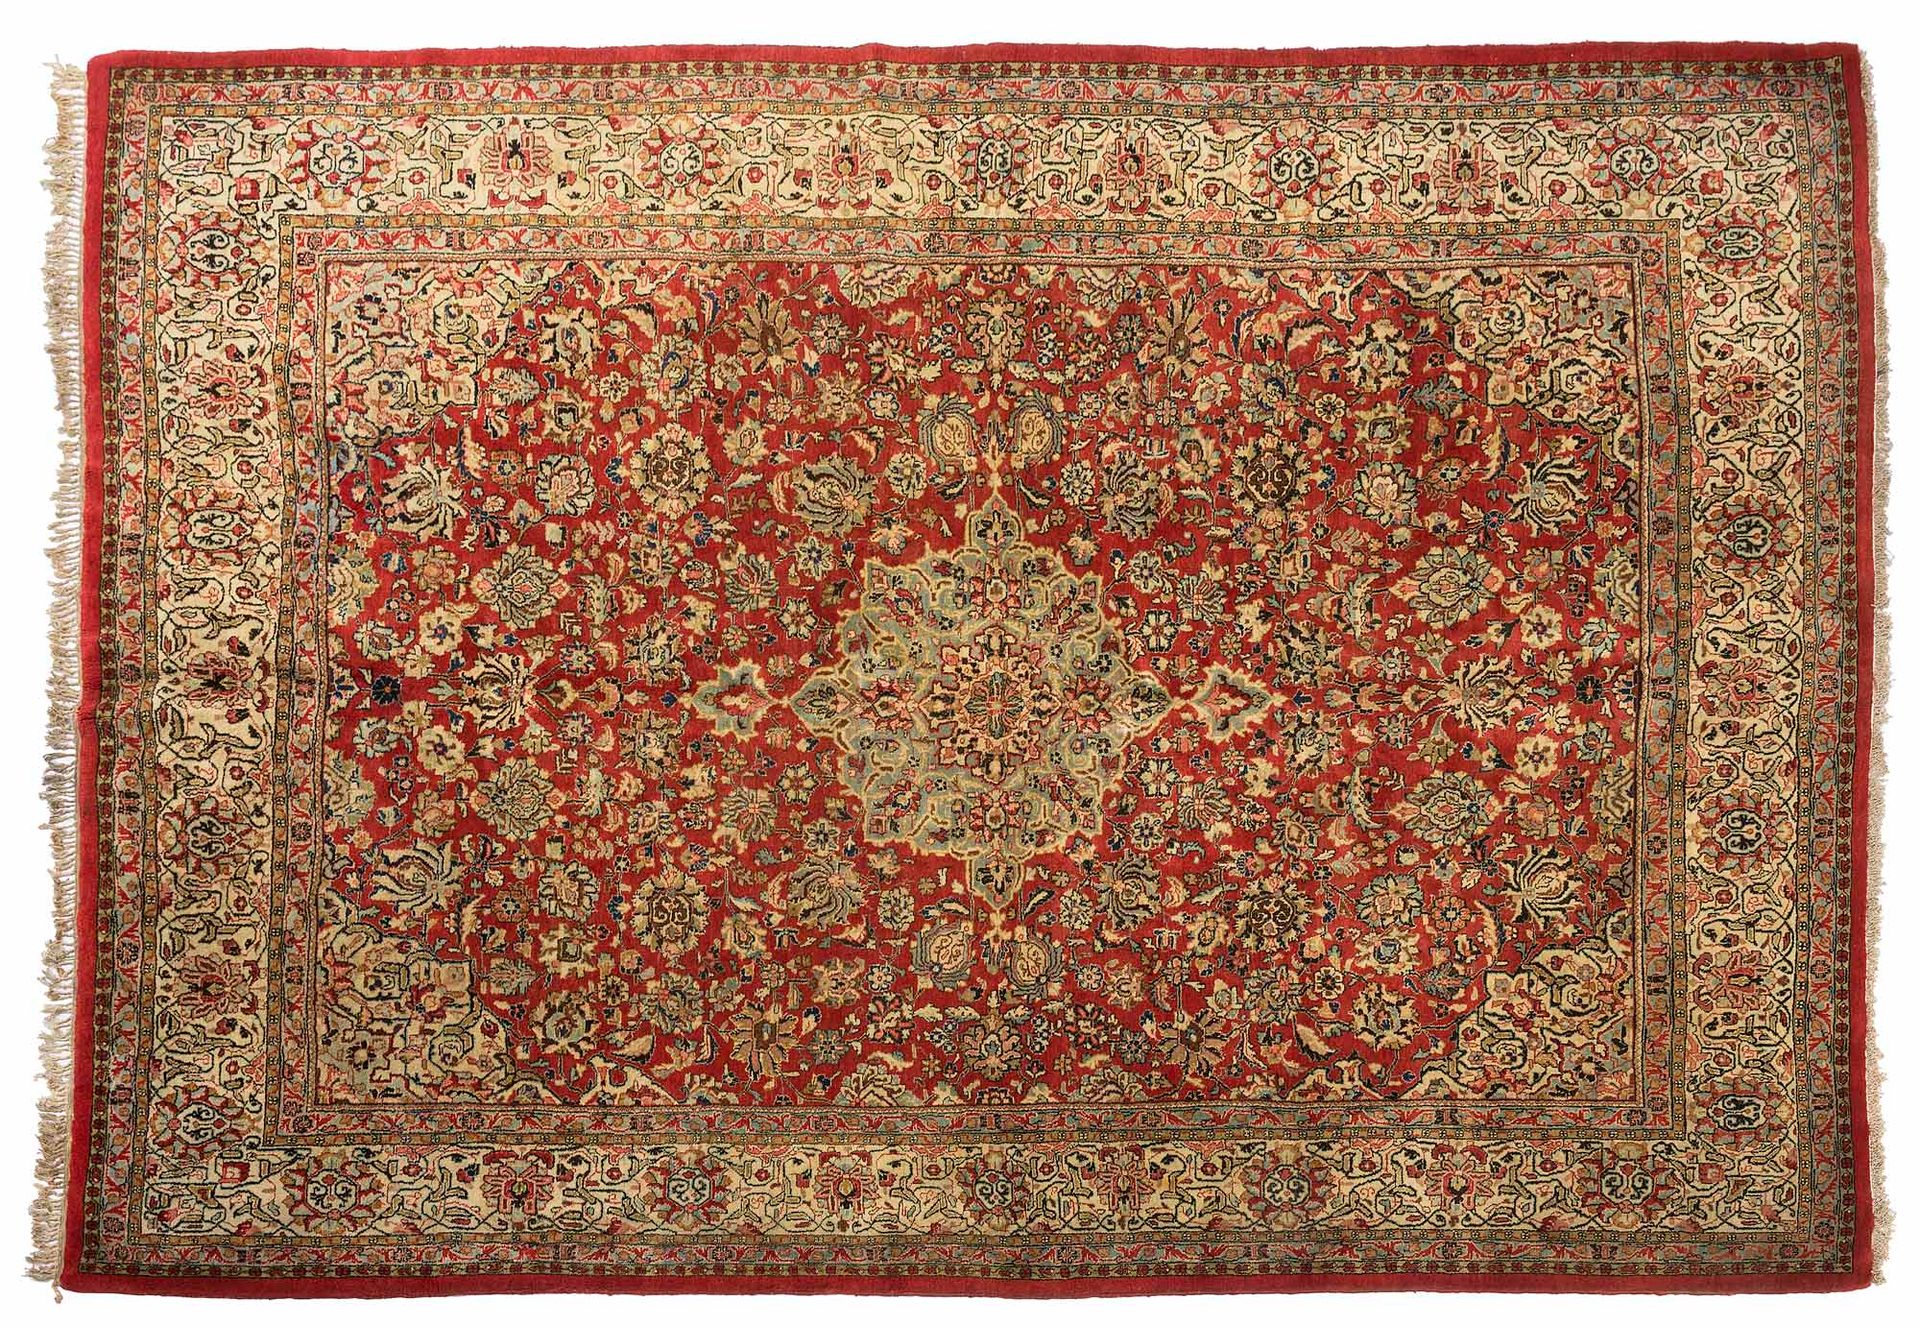 Null 萨鲁克地毯（伊朗），20世纪中期

尺寸：380 x 271厘米。

技术特点 : 羊毛丝绒，棉质基础。

一块砖地上覆盖着粉色色调的花卉播种，在其中&hellip;